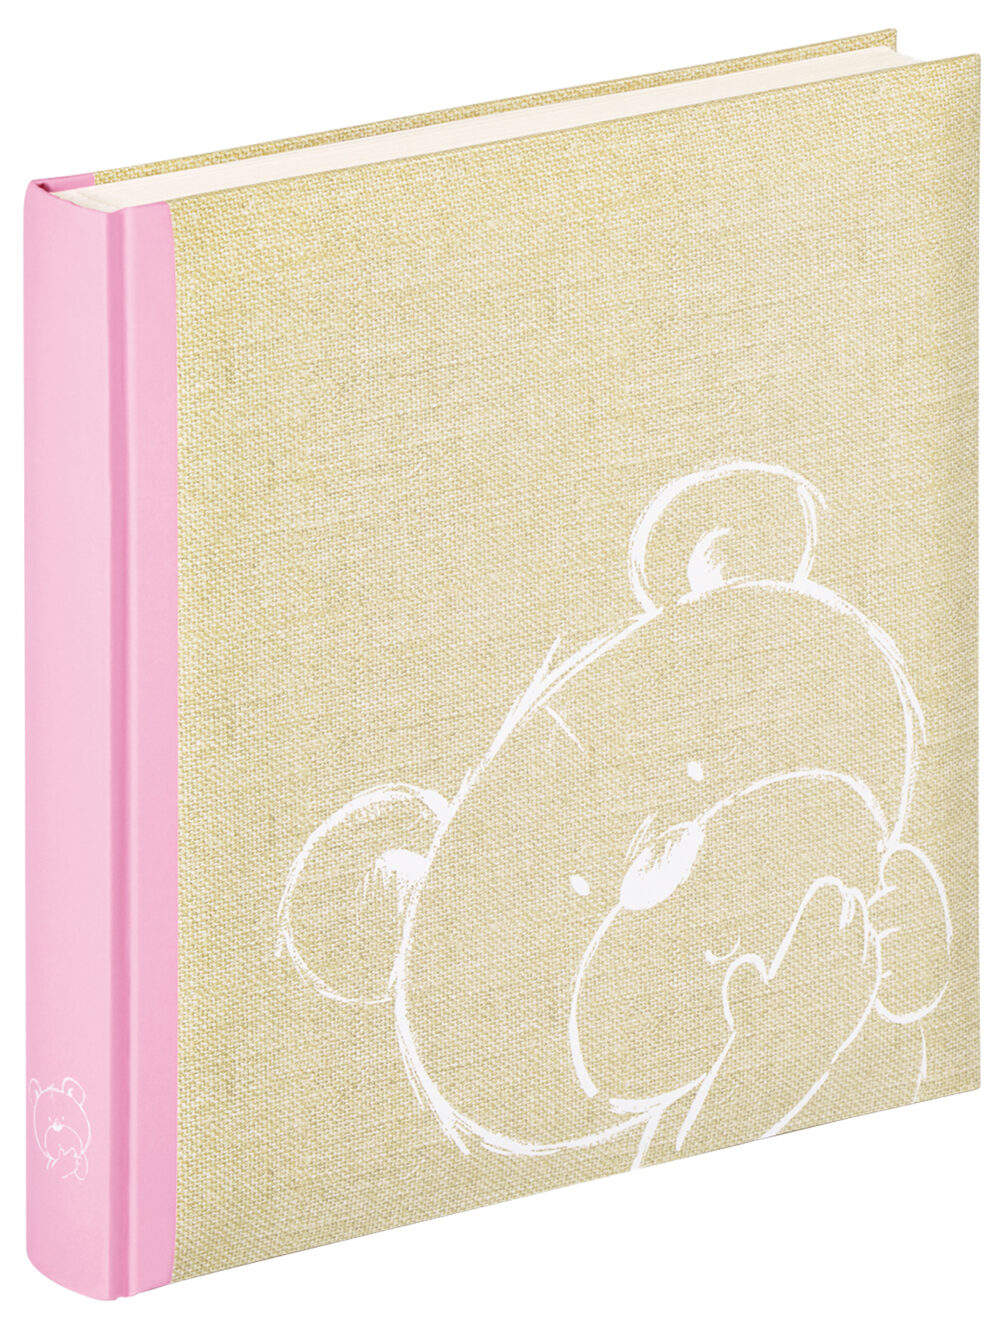 Fotoalbum Baby Babyalbum Geburt Dreamtime rosa 28X30,5 cm Walter Design Online kaufen Missforty